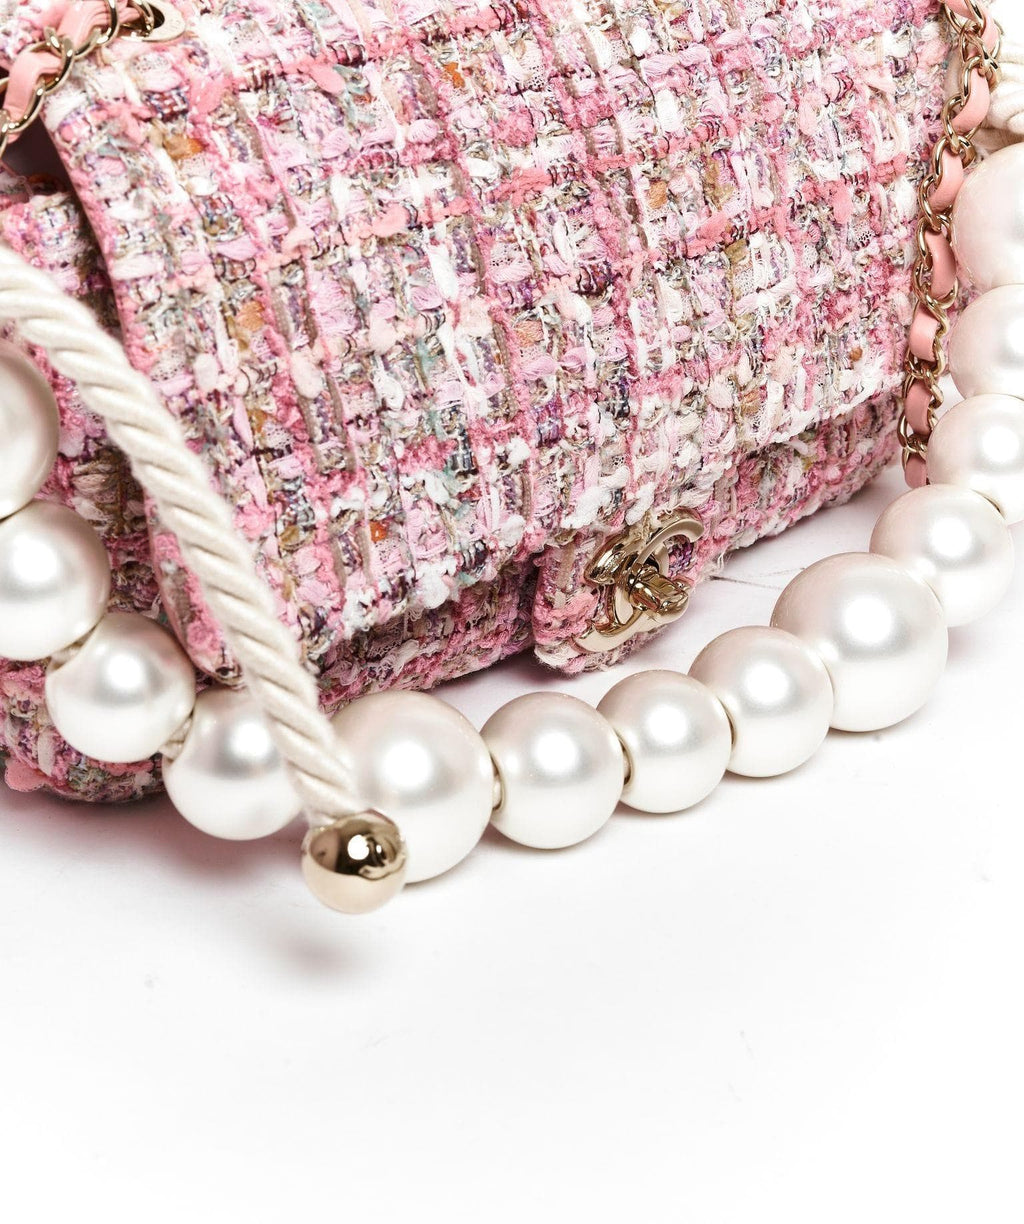 Chanel Pearl Pink Chain Flap Bag – Trésor Vintage